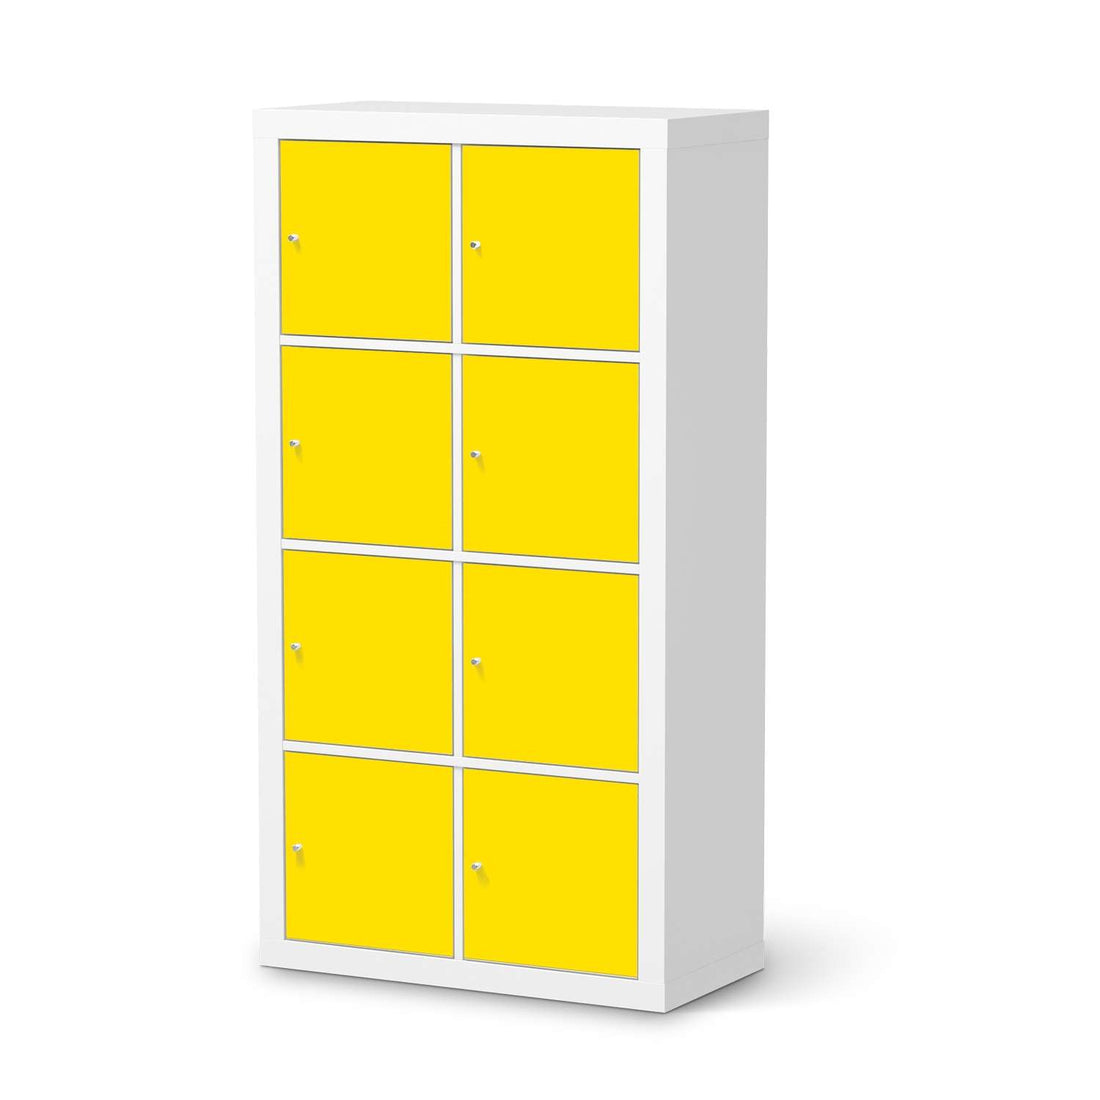 Folie für Möbel Gelb Dark - IKEA Kallax Regal 8 Türen  - weiss